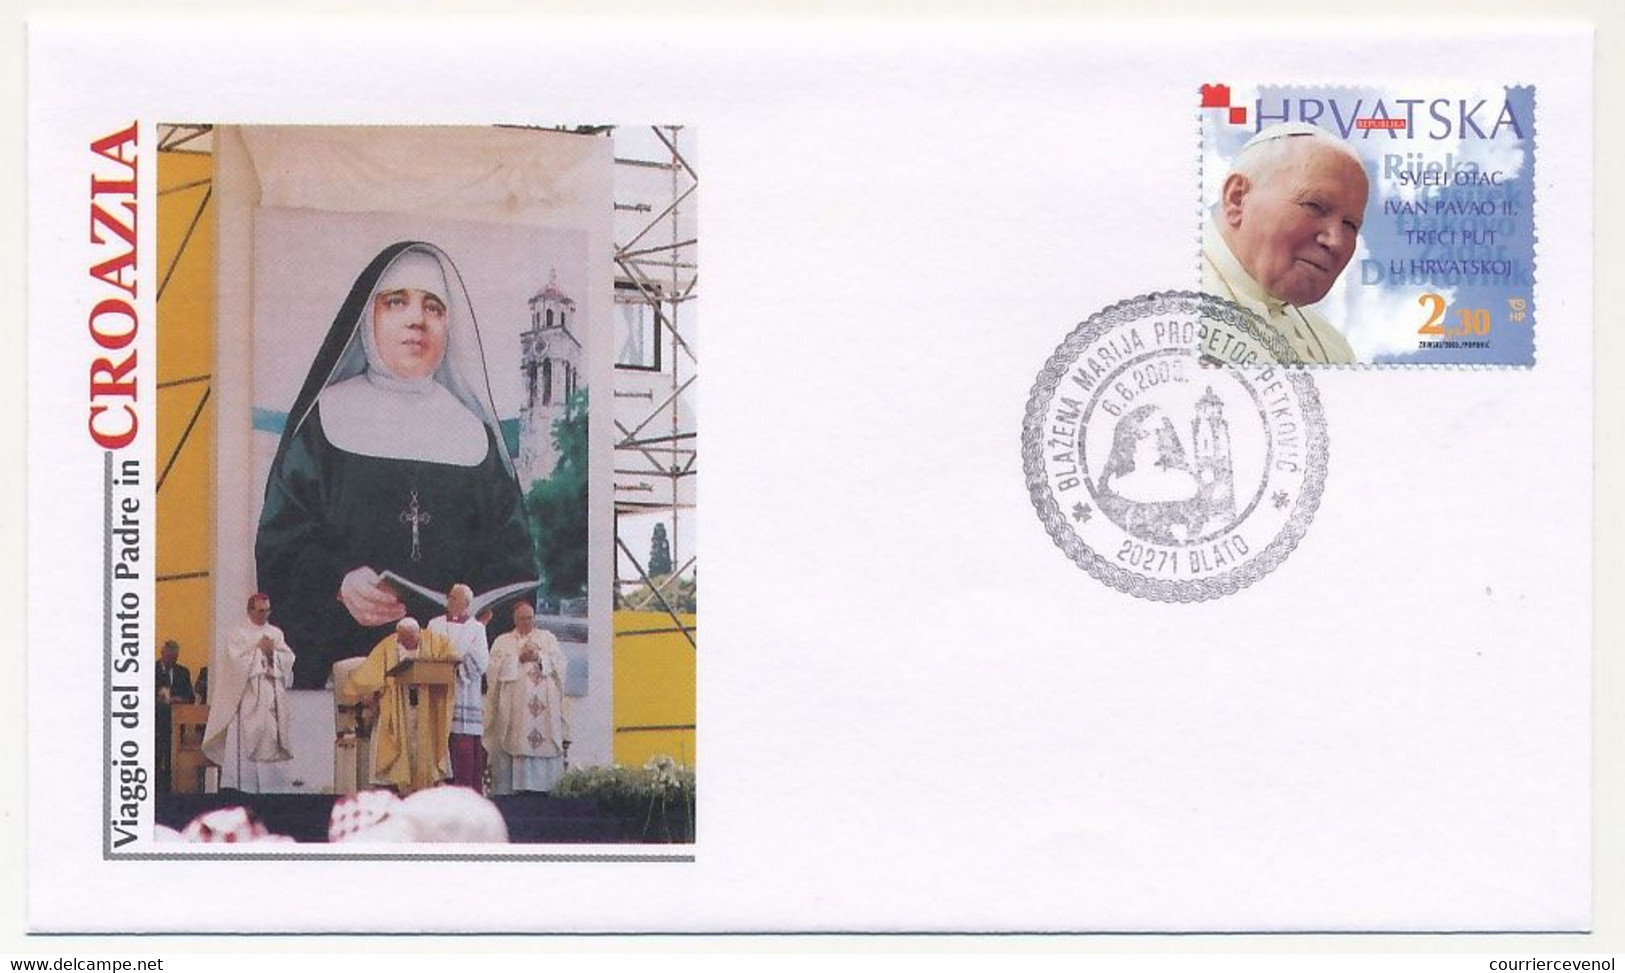 CROATIE - 12 enveloppes illustrées Pape Jean Paul II - Voyage en Croatie - 2003